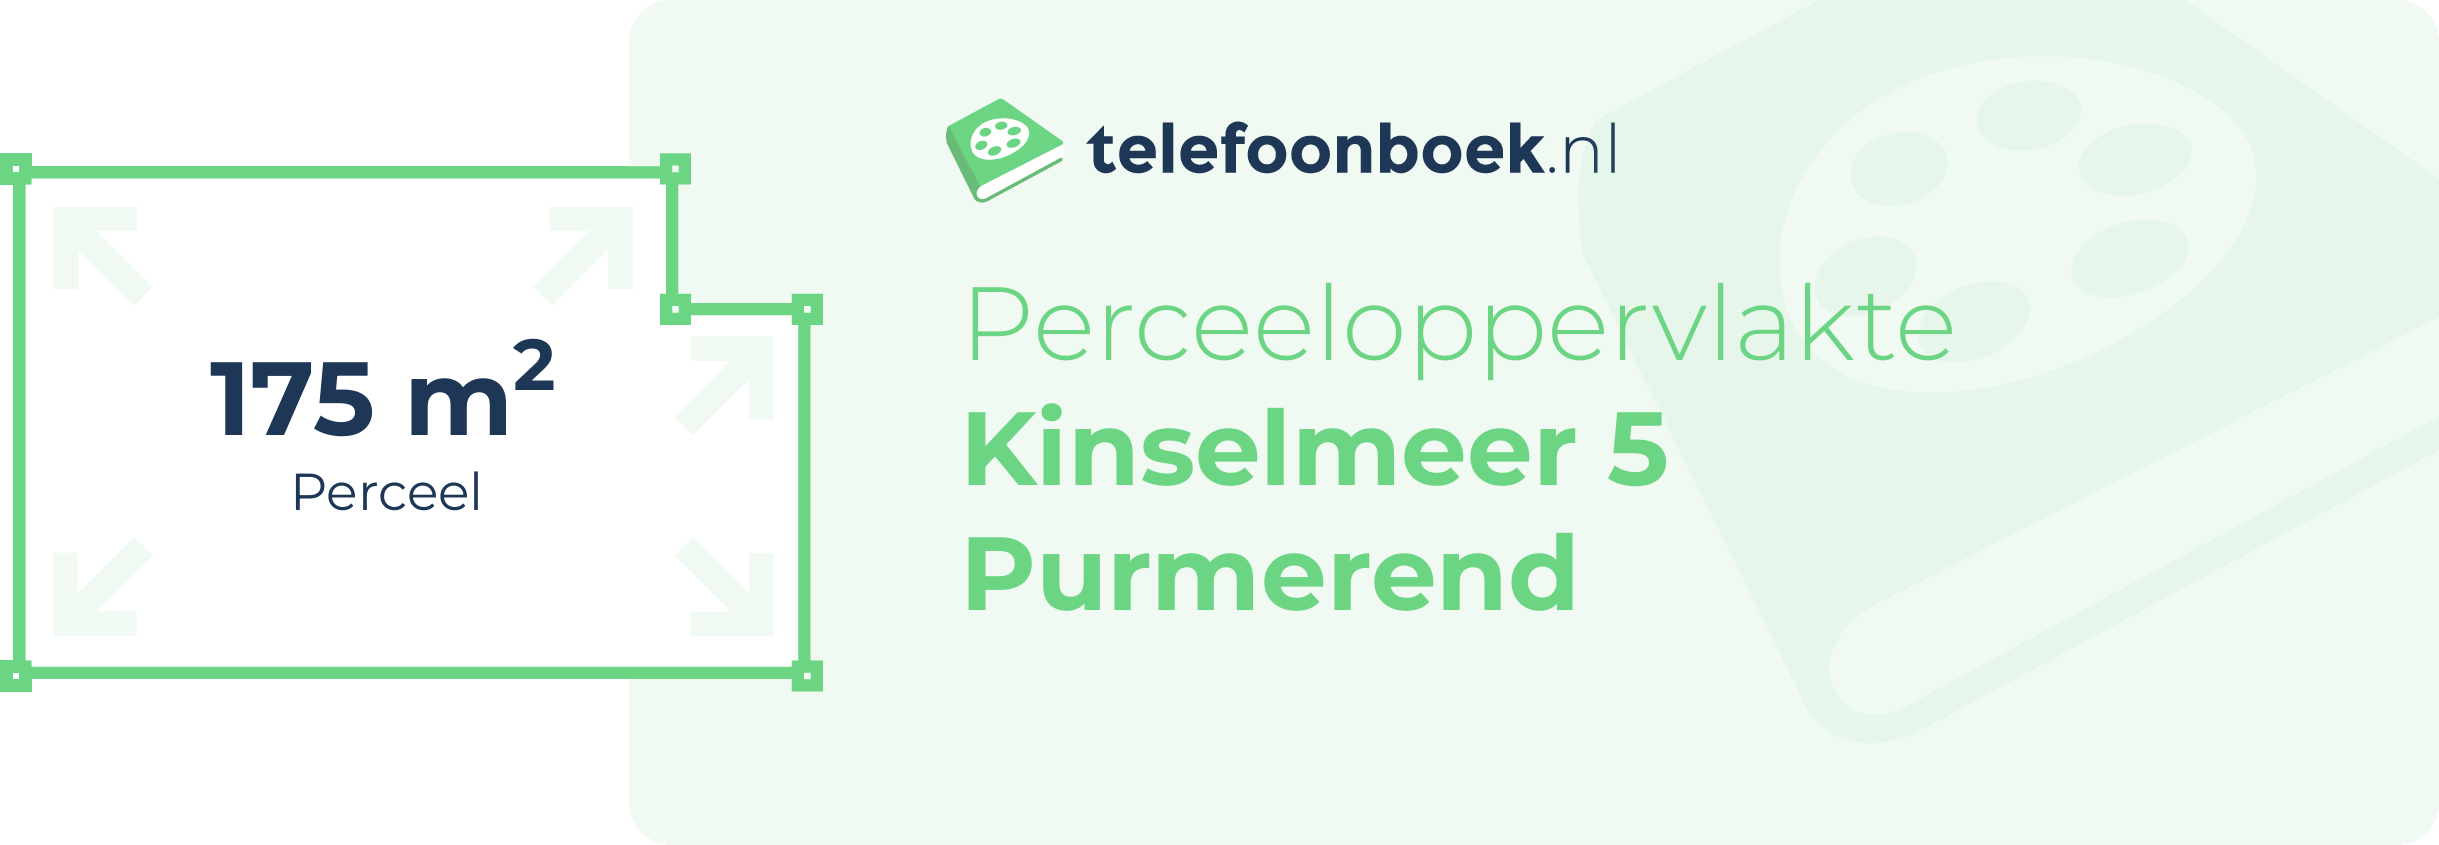 Perceeloppervlakte Kinselmeer 5 Purmerend